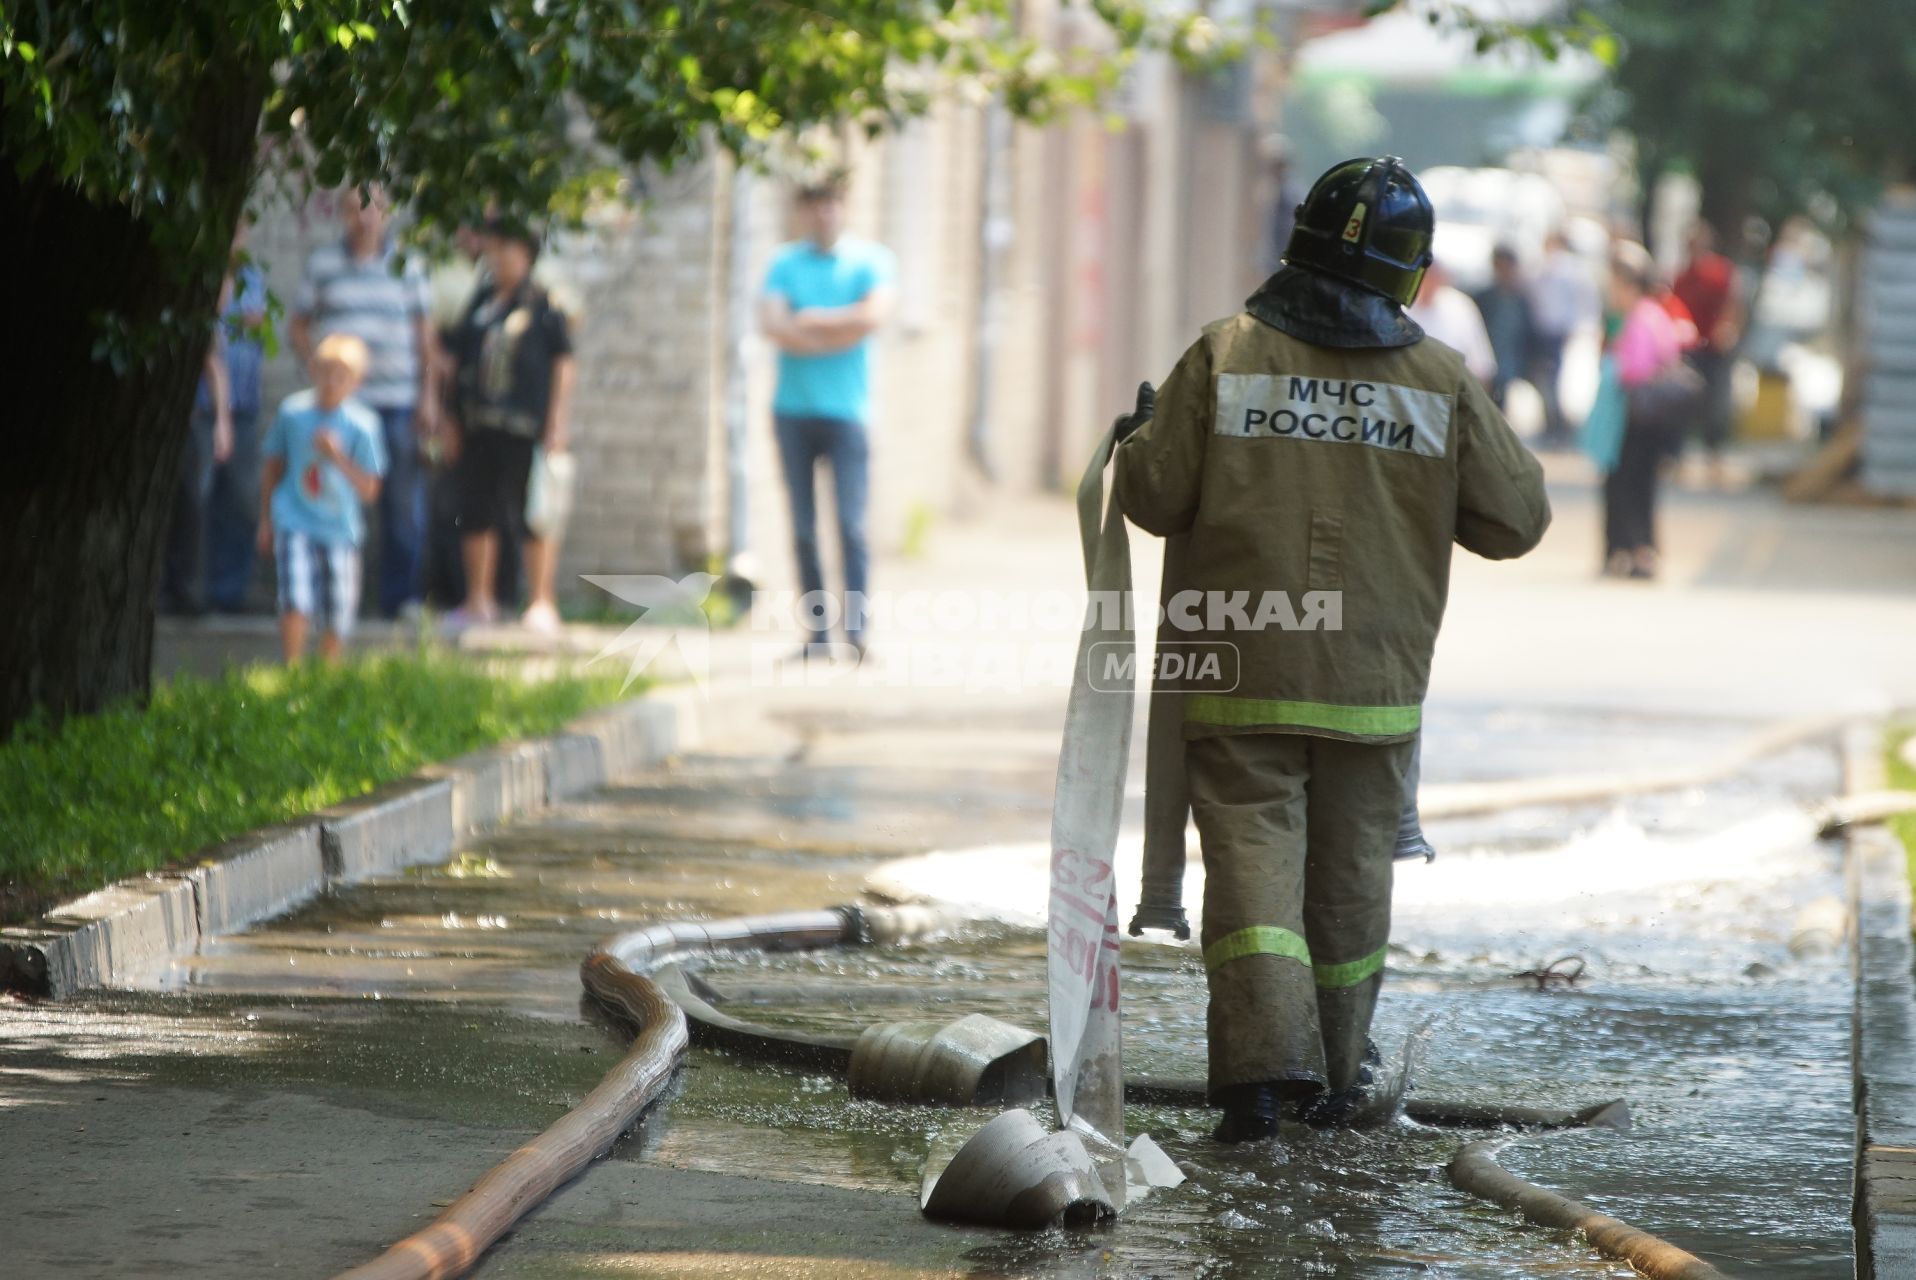 Пожарный идет по тротуару залитому водой от тушения пожара дом в Екатеринбурге